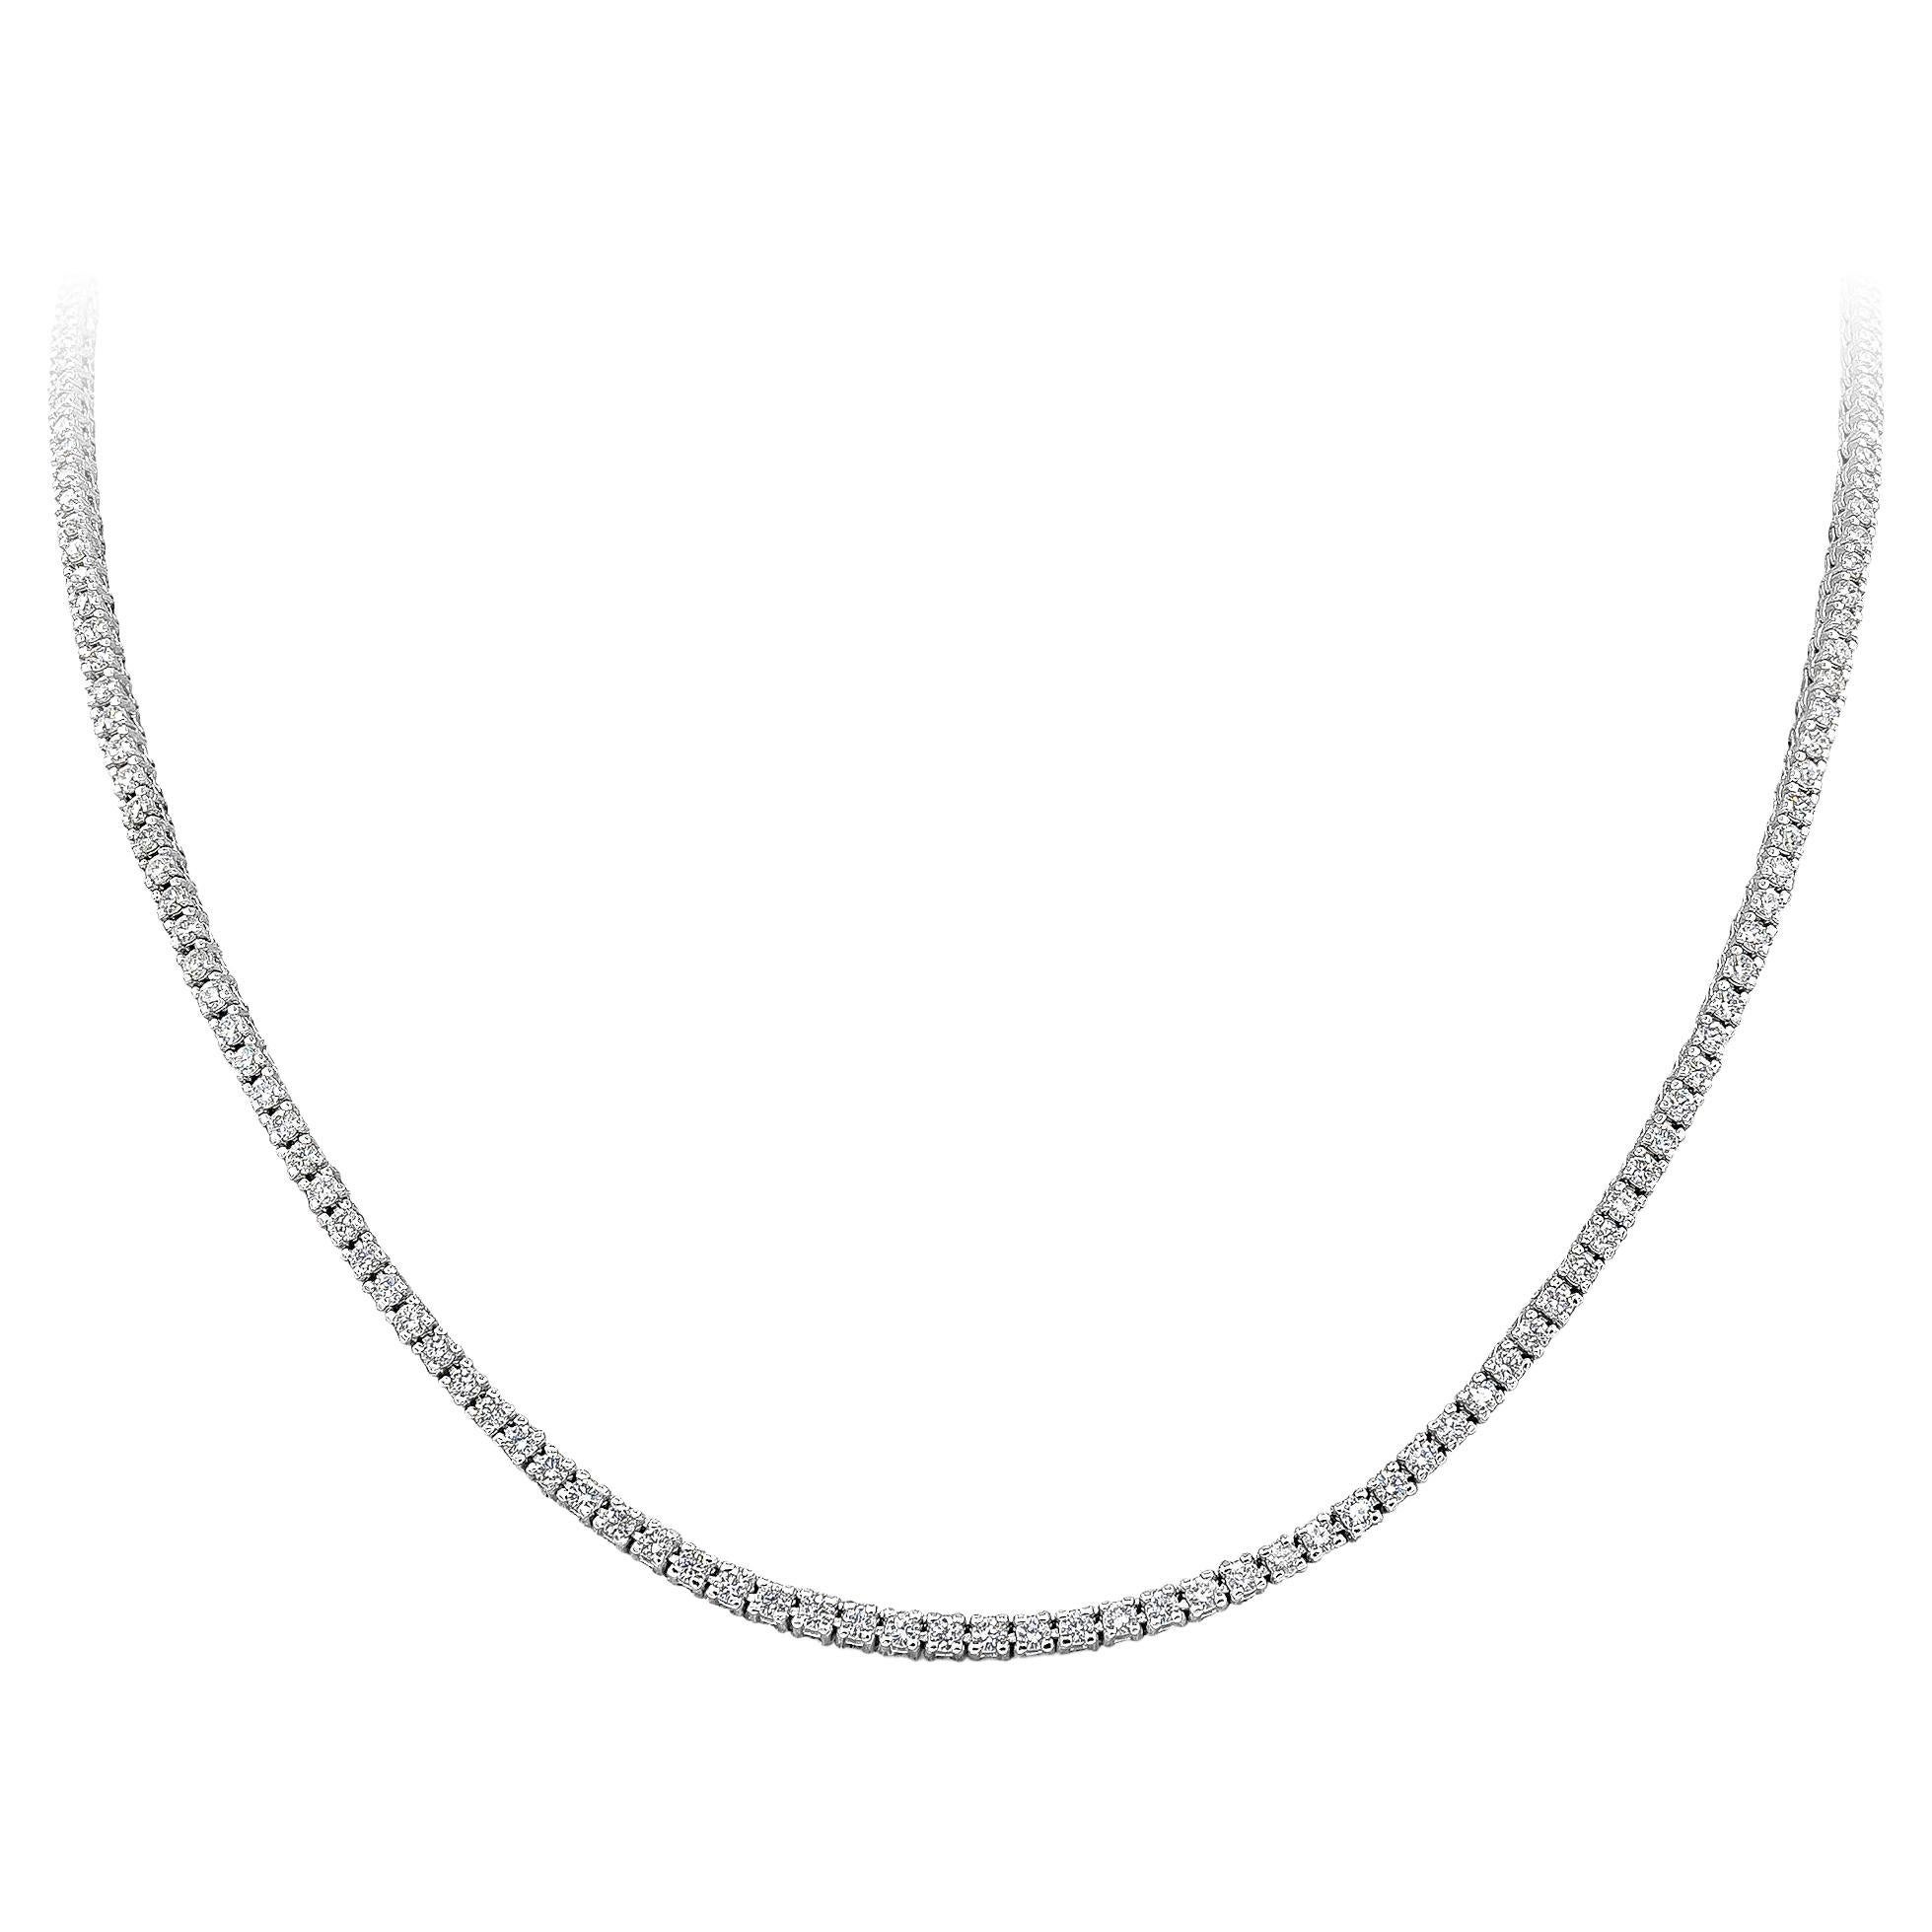 2.62 Carat Round Diamond Tennis Necklace in 14k White Gold